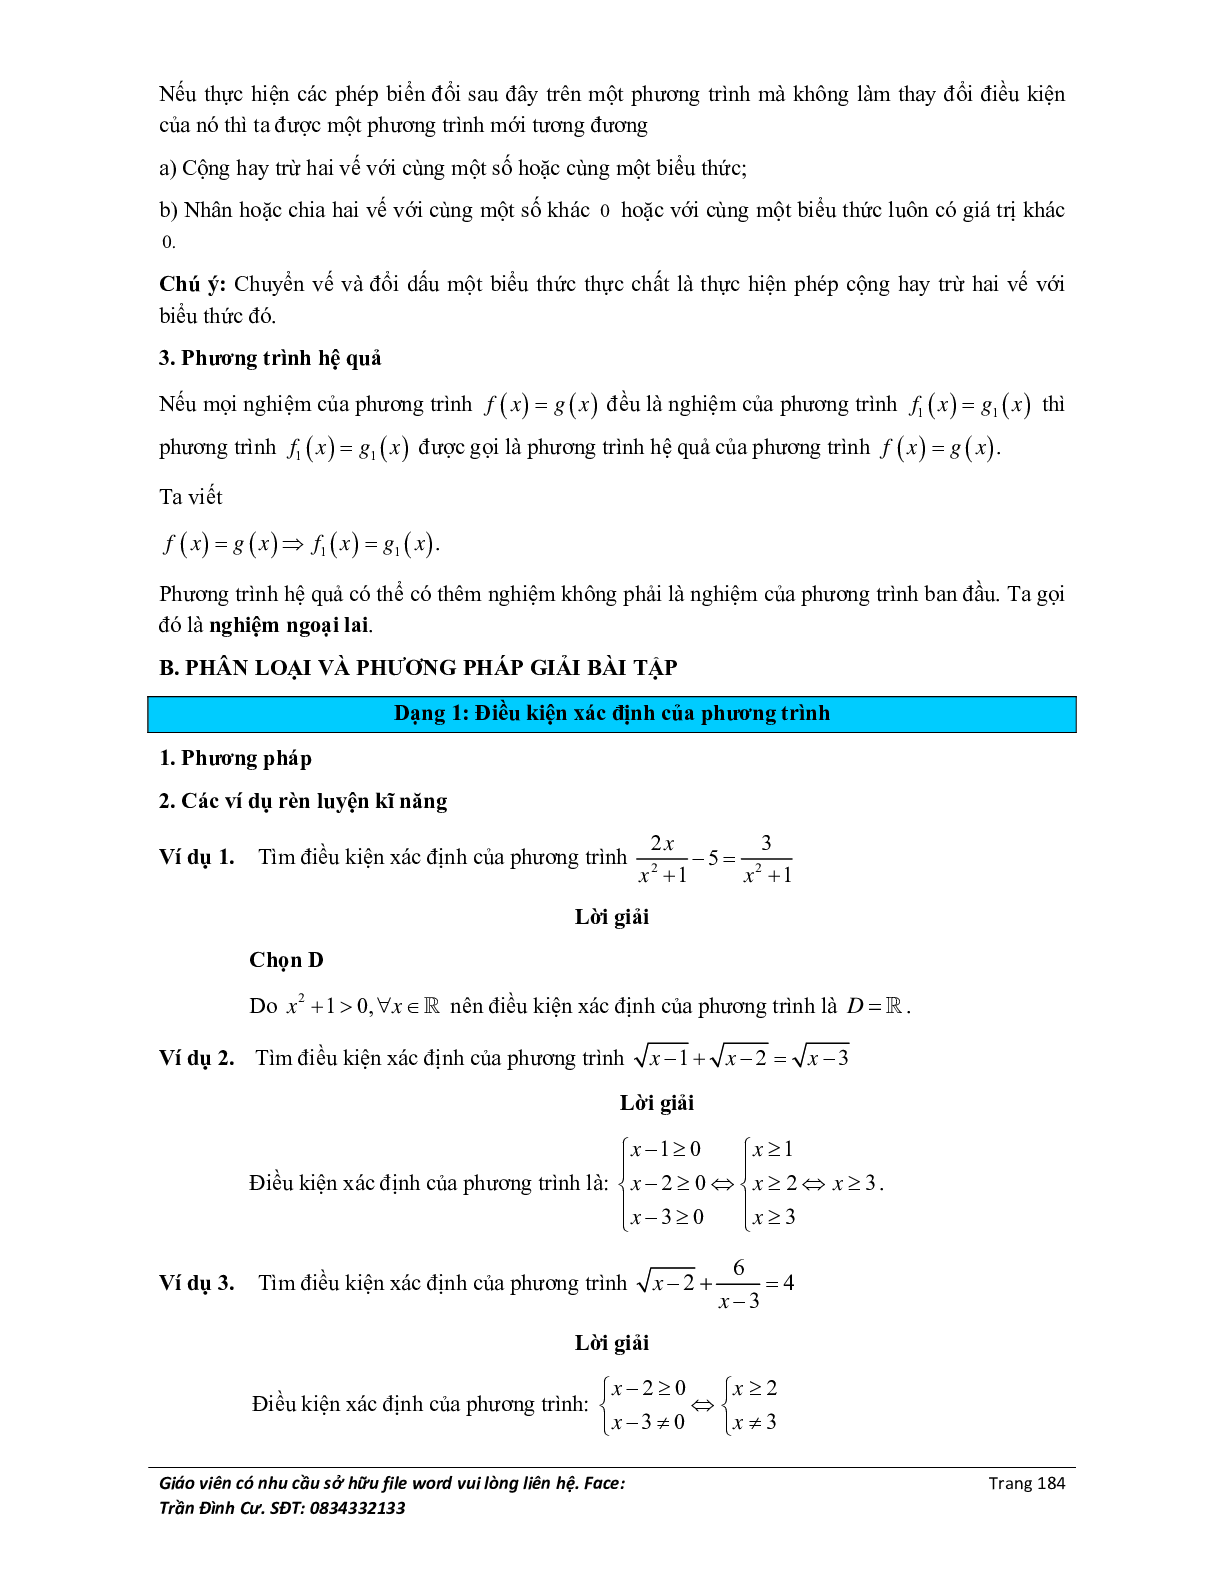 Đại cương về phương trình môn Toán lớp 10 (trang 2)